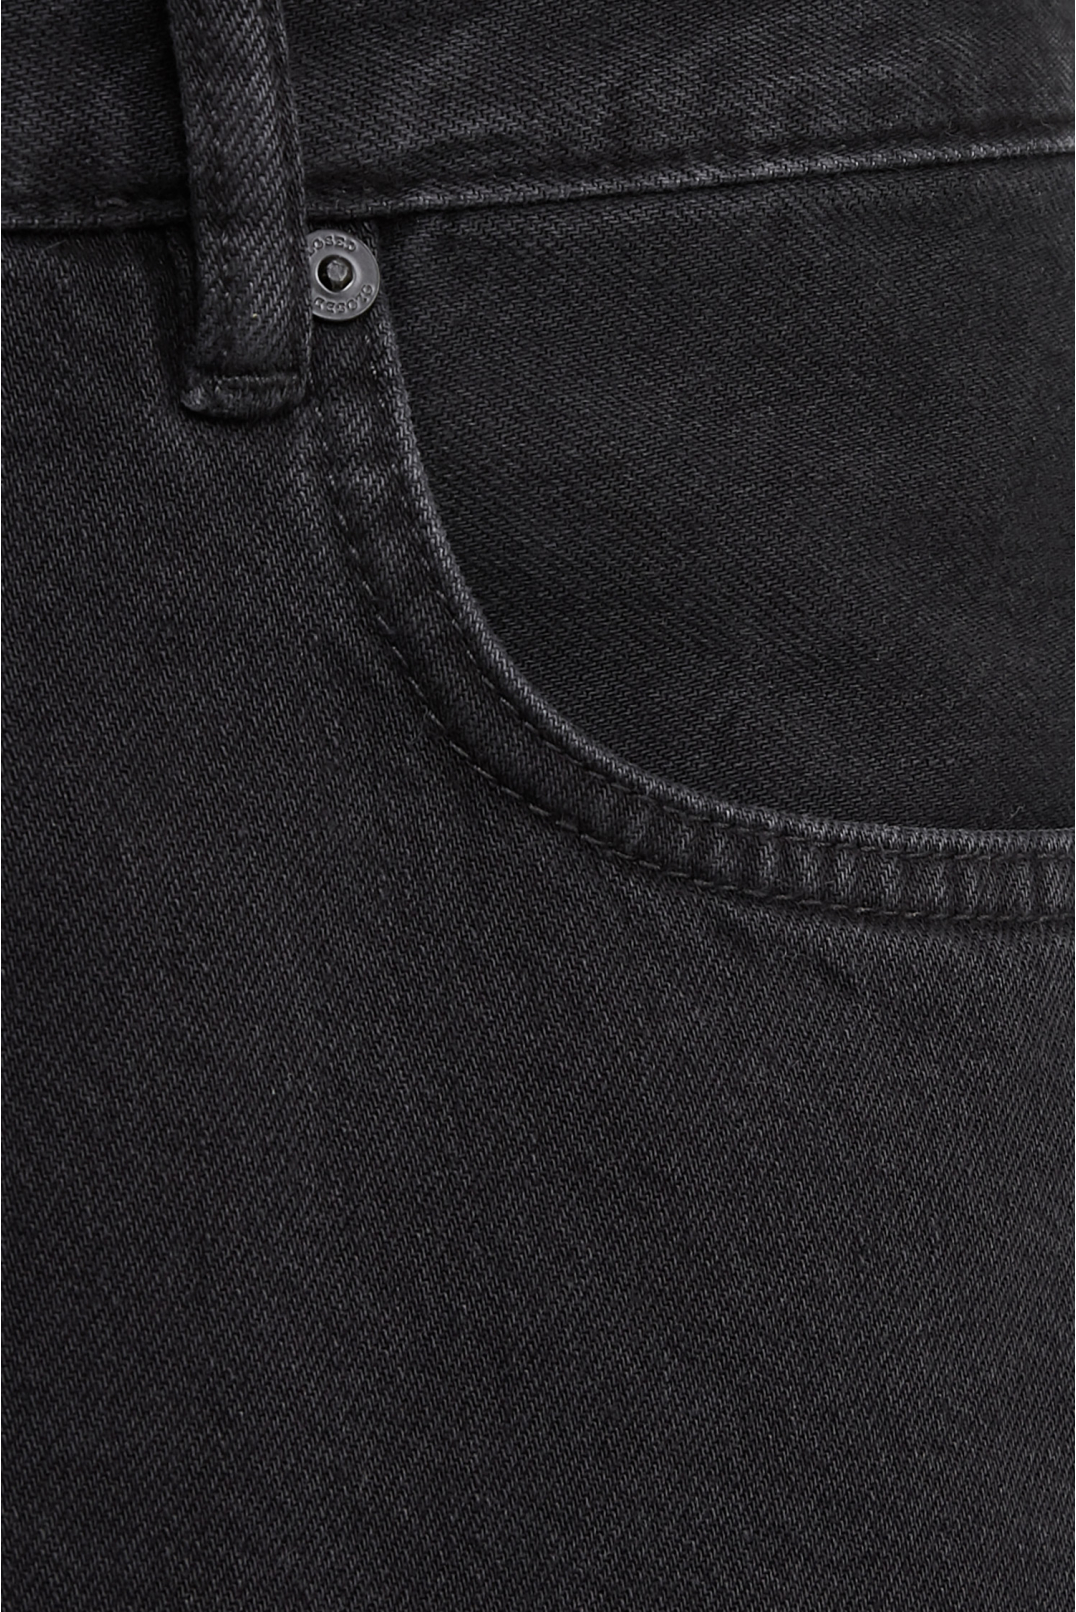 Чоловічі чорні джинсові шорти  - 3